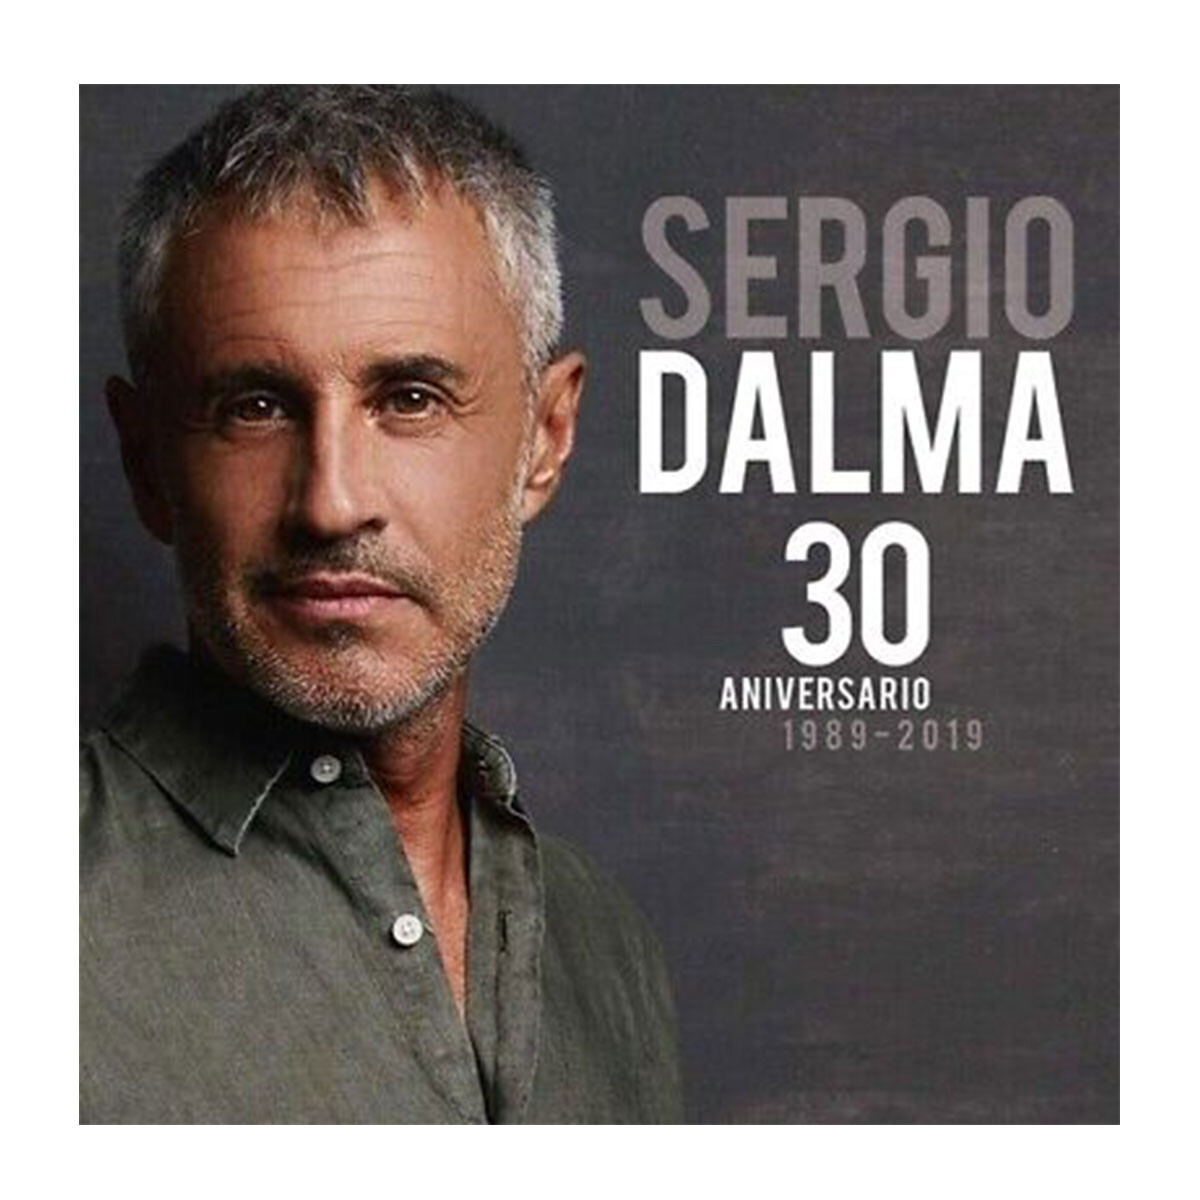 Sergio Dalma 30 - Vinilo 